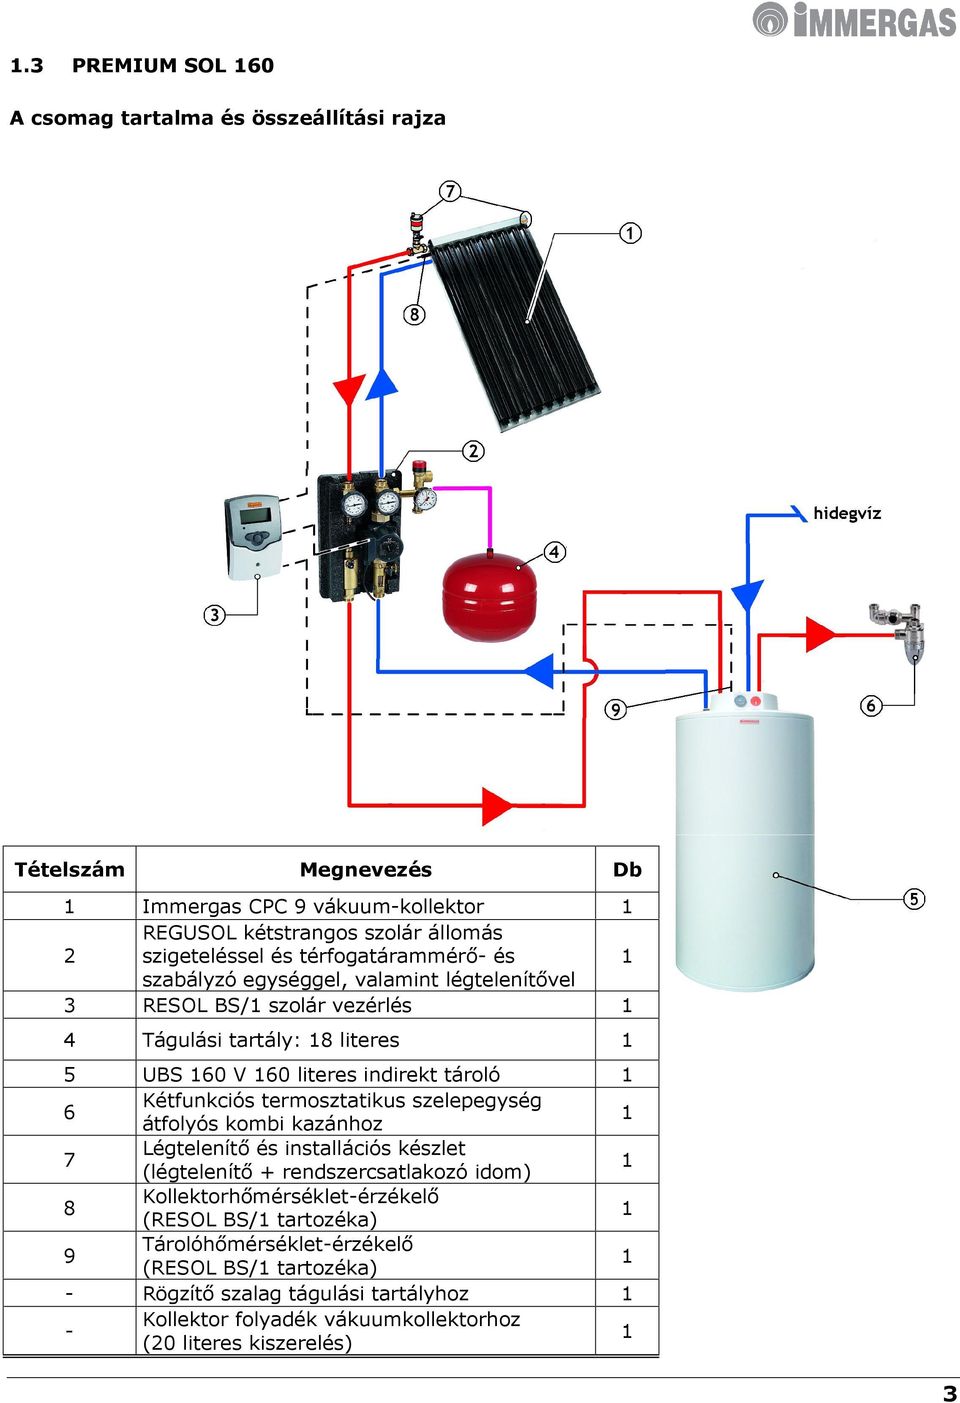 Kétfunkciós termosztatikus szelepegység átfolyós kombi kazánhoz 1 7 Légtelenítő és installációs készlet (légtelenítő + rendszercsatlakozó idom) 1 8 Kollektorhőmérséklet-érzékelő